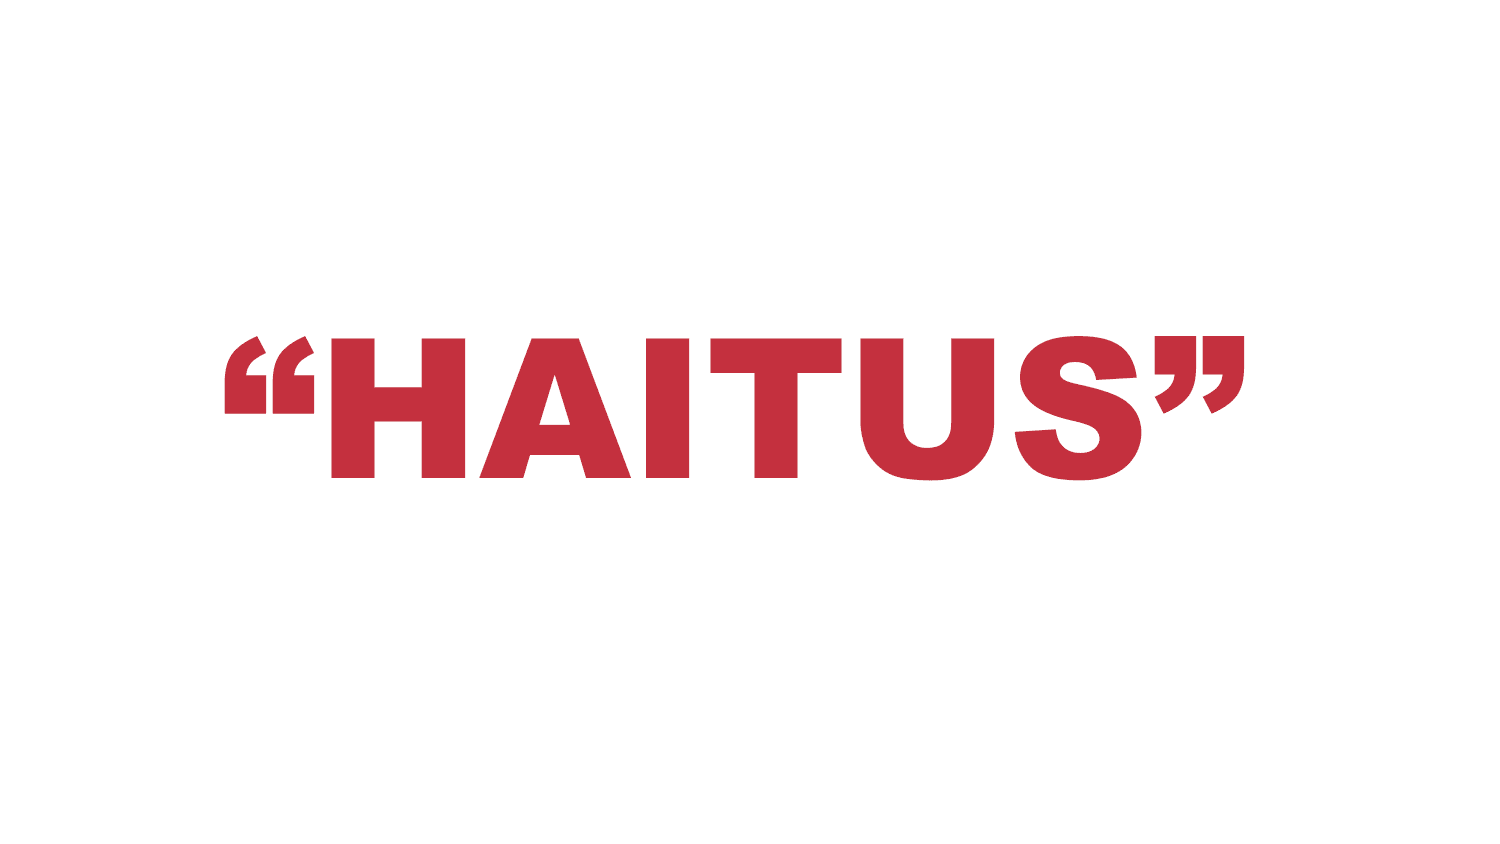 What does “Haitus” mean?